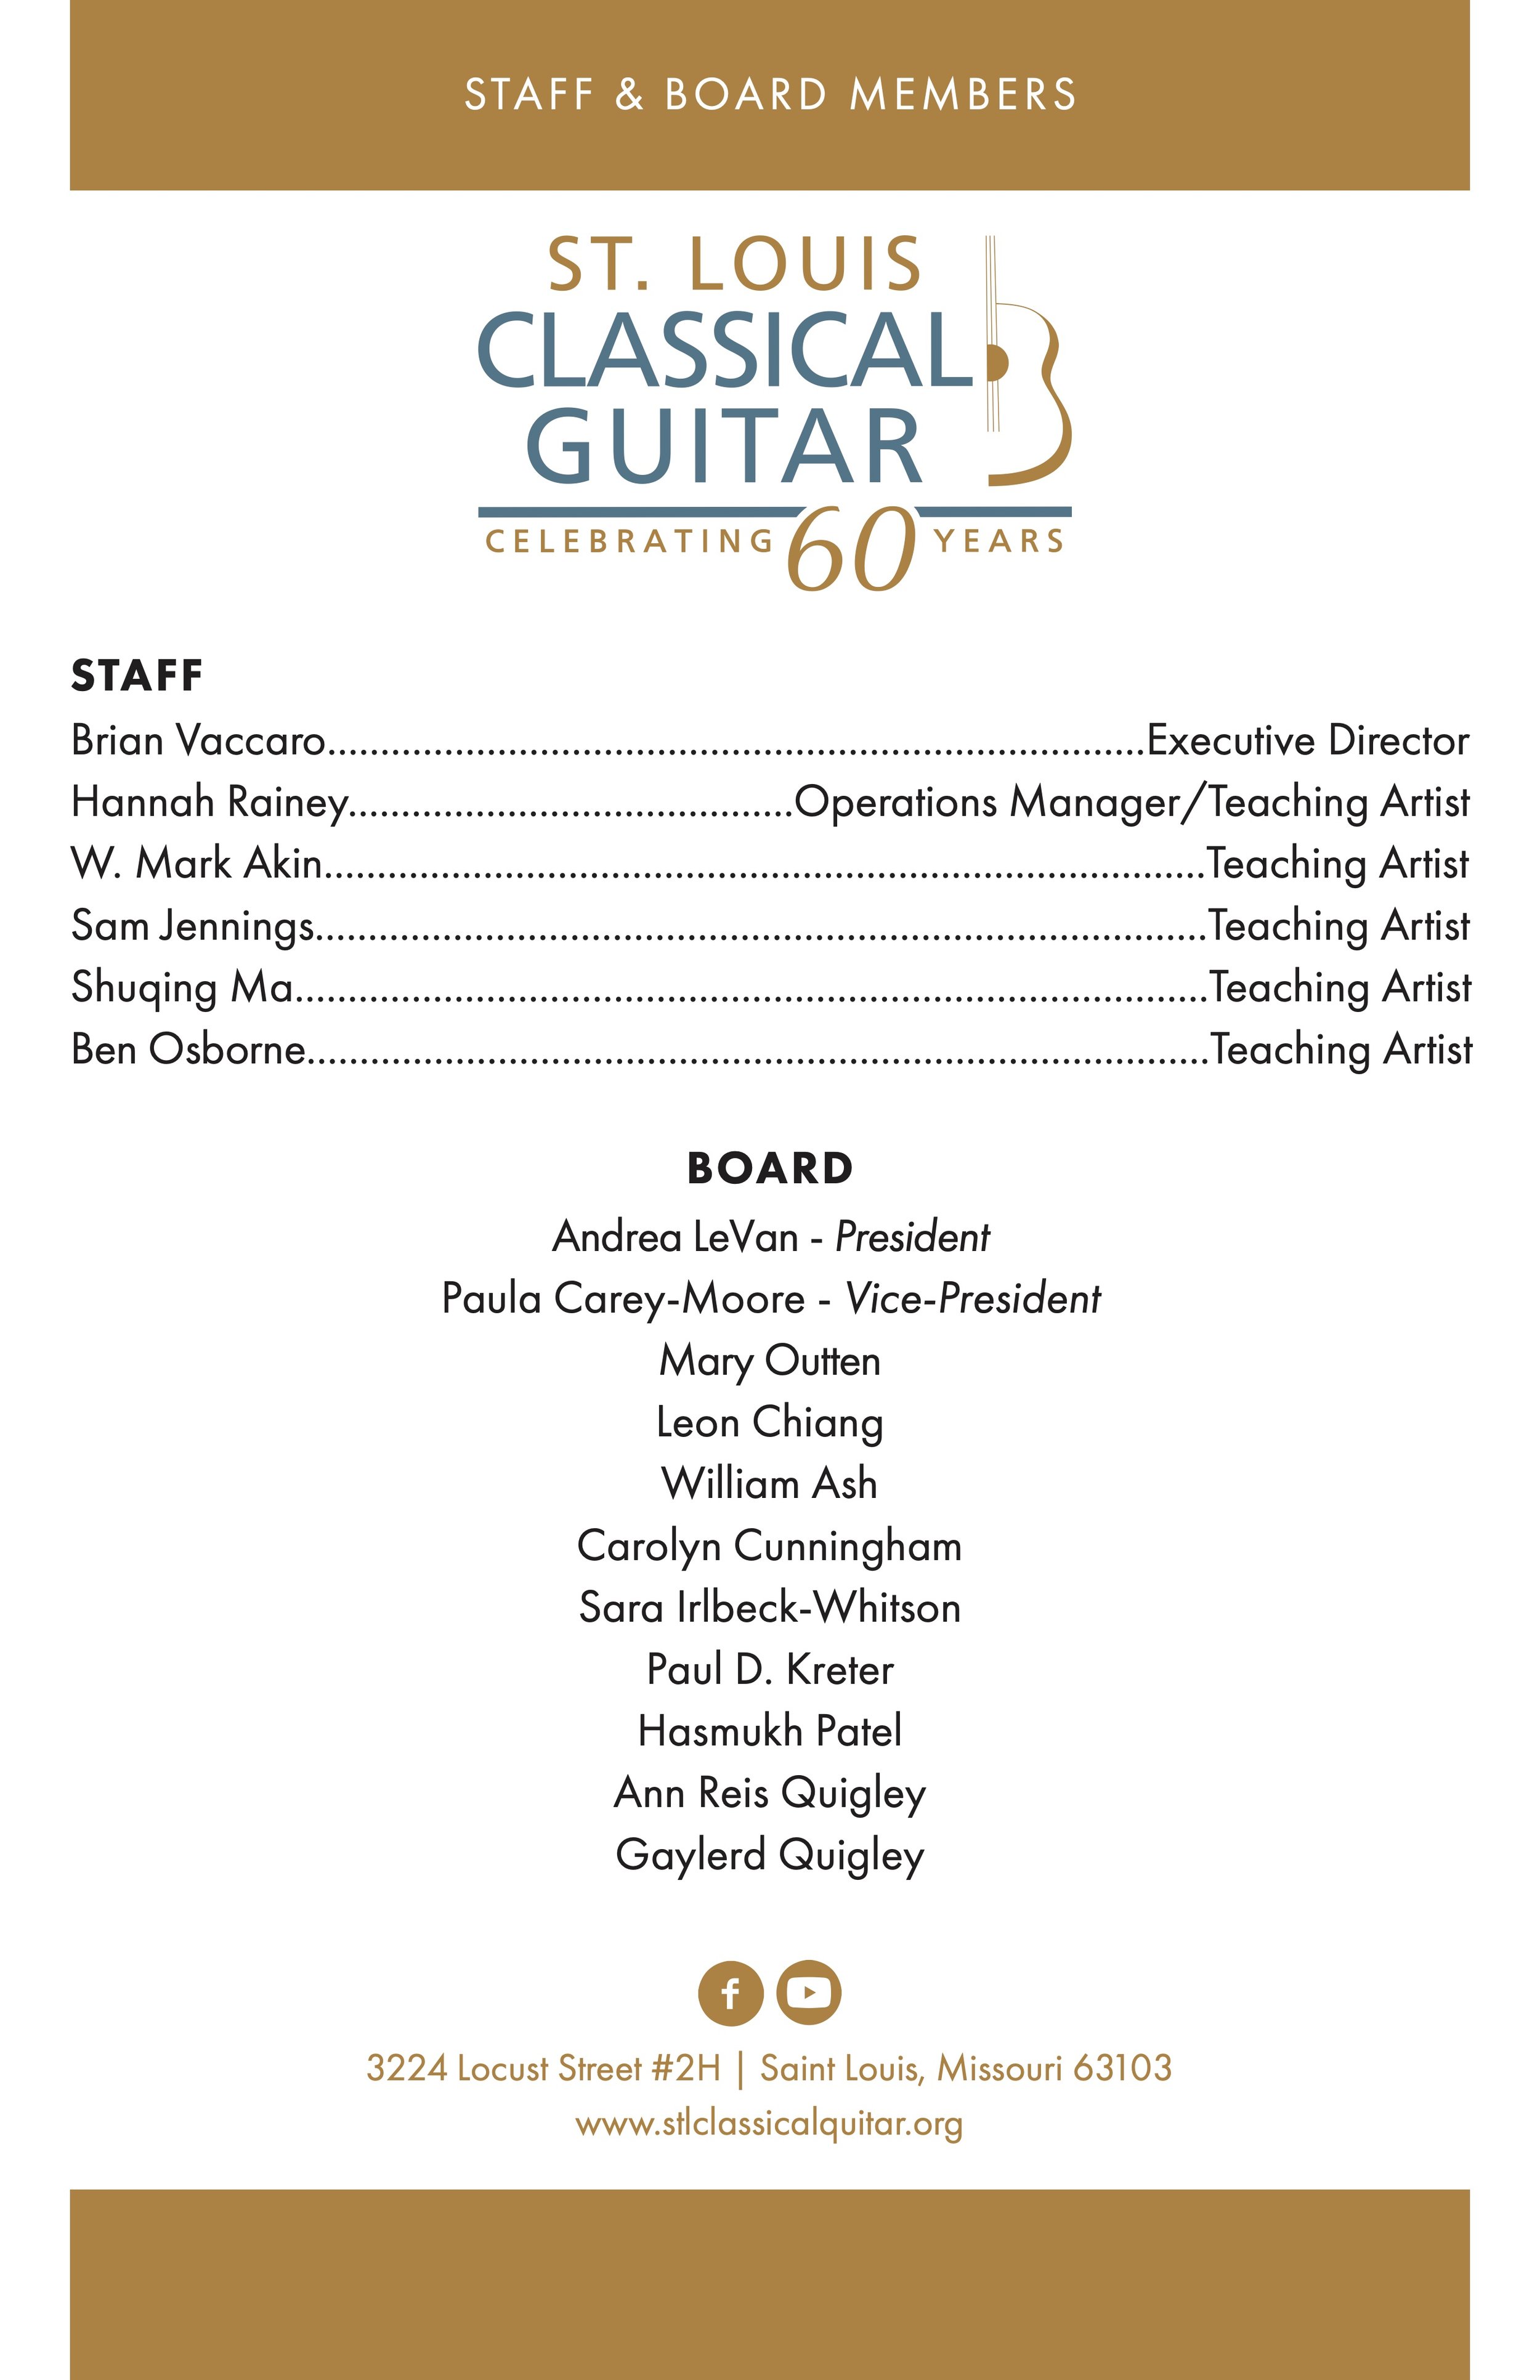 STL Classical Guitar Booklet-3.jpg